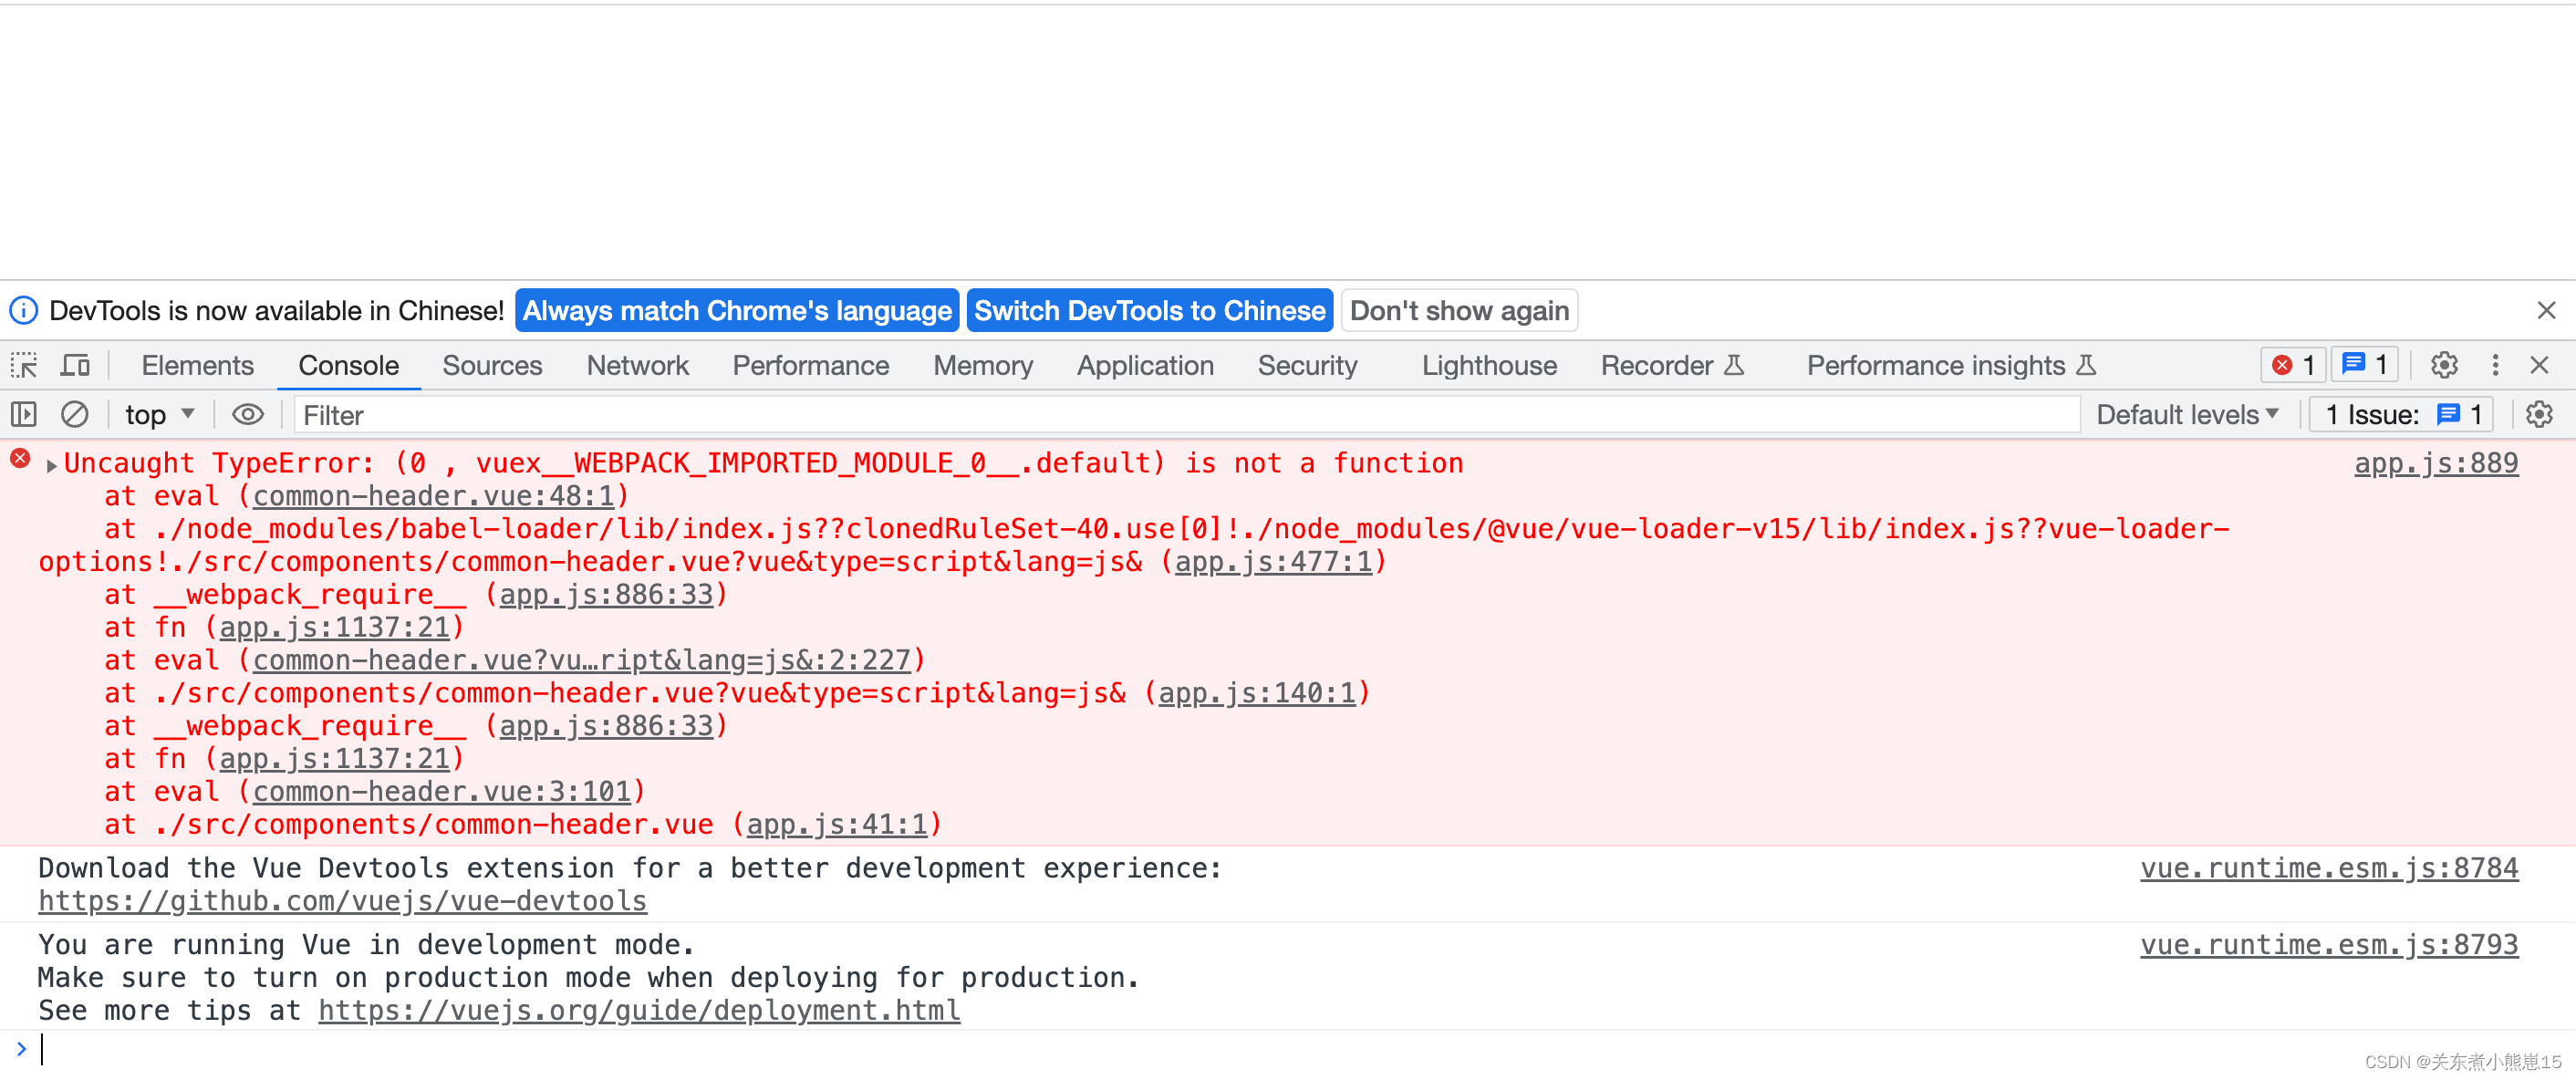 Uncaught TypeError: (0 , vuex__WEBPACK_IMPORTED_MODULE_0__.default) is not a function